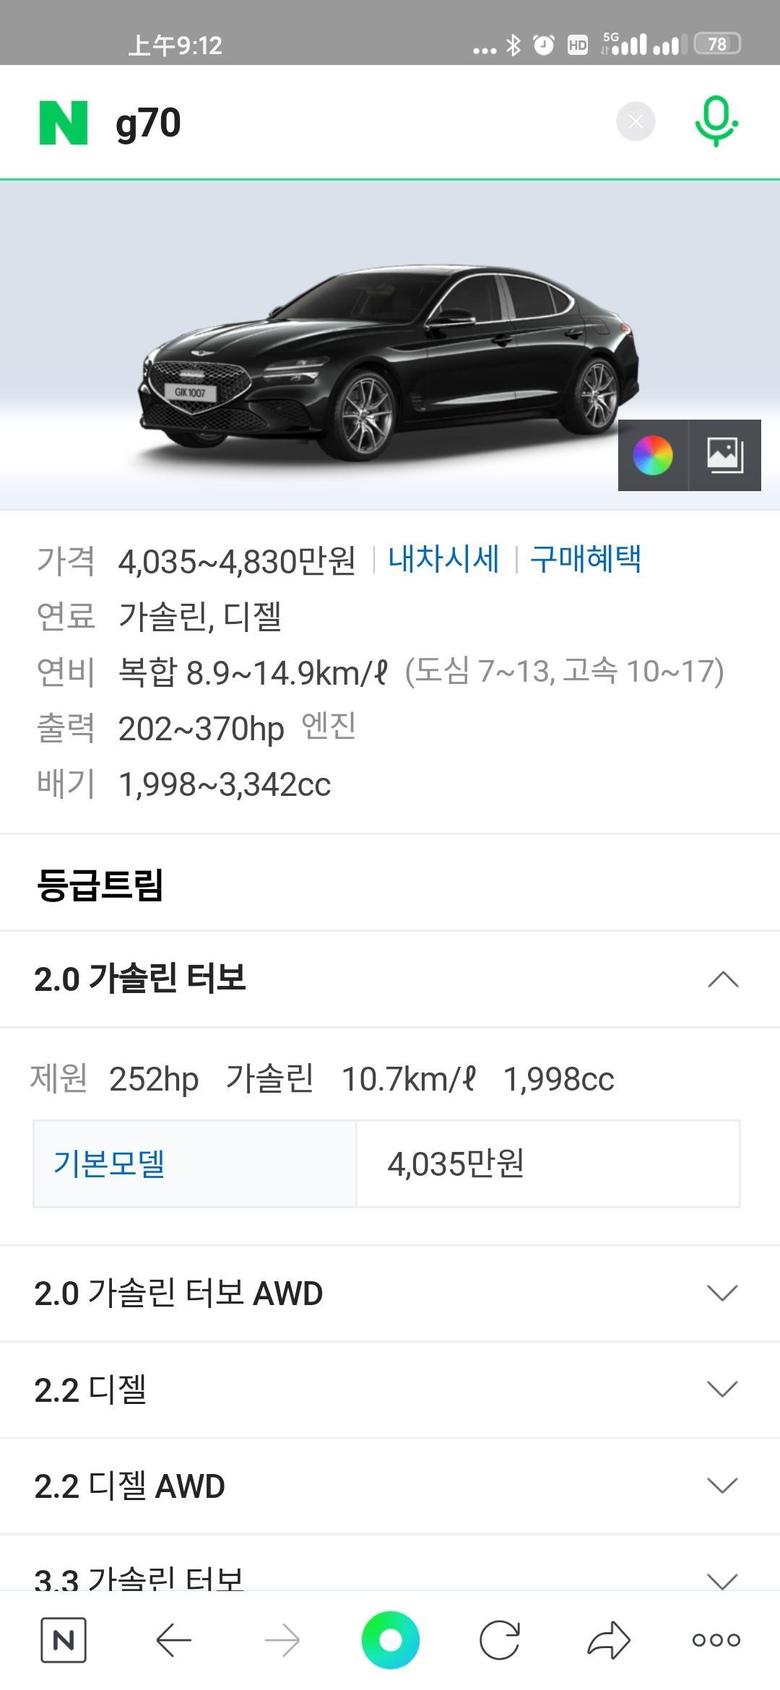 捷尼赛思g70韩国基本款售价，折合人民币23万，国内25起步，感觉挺良心的价格